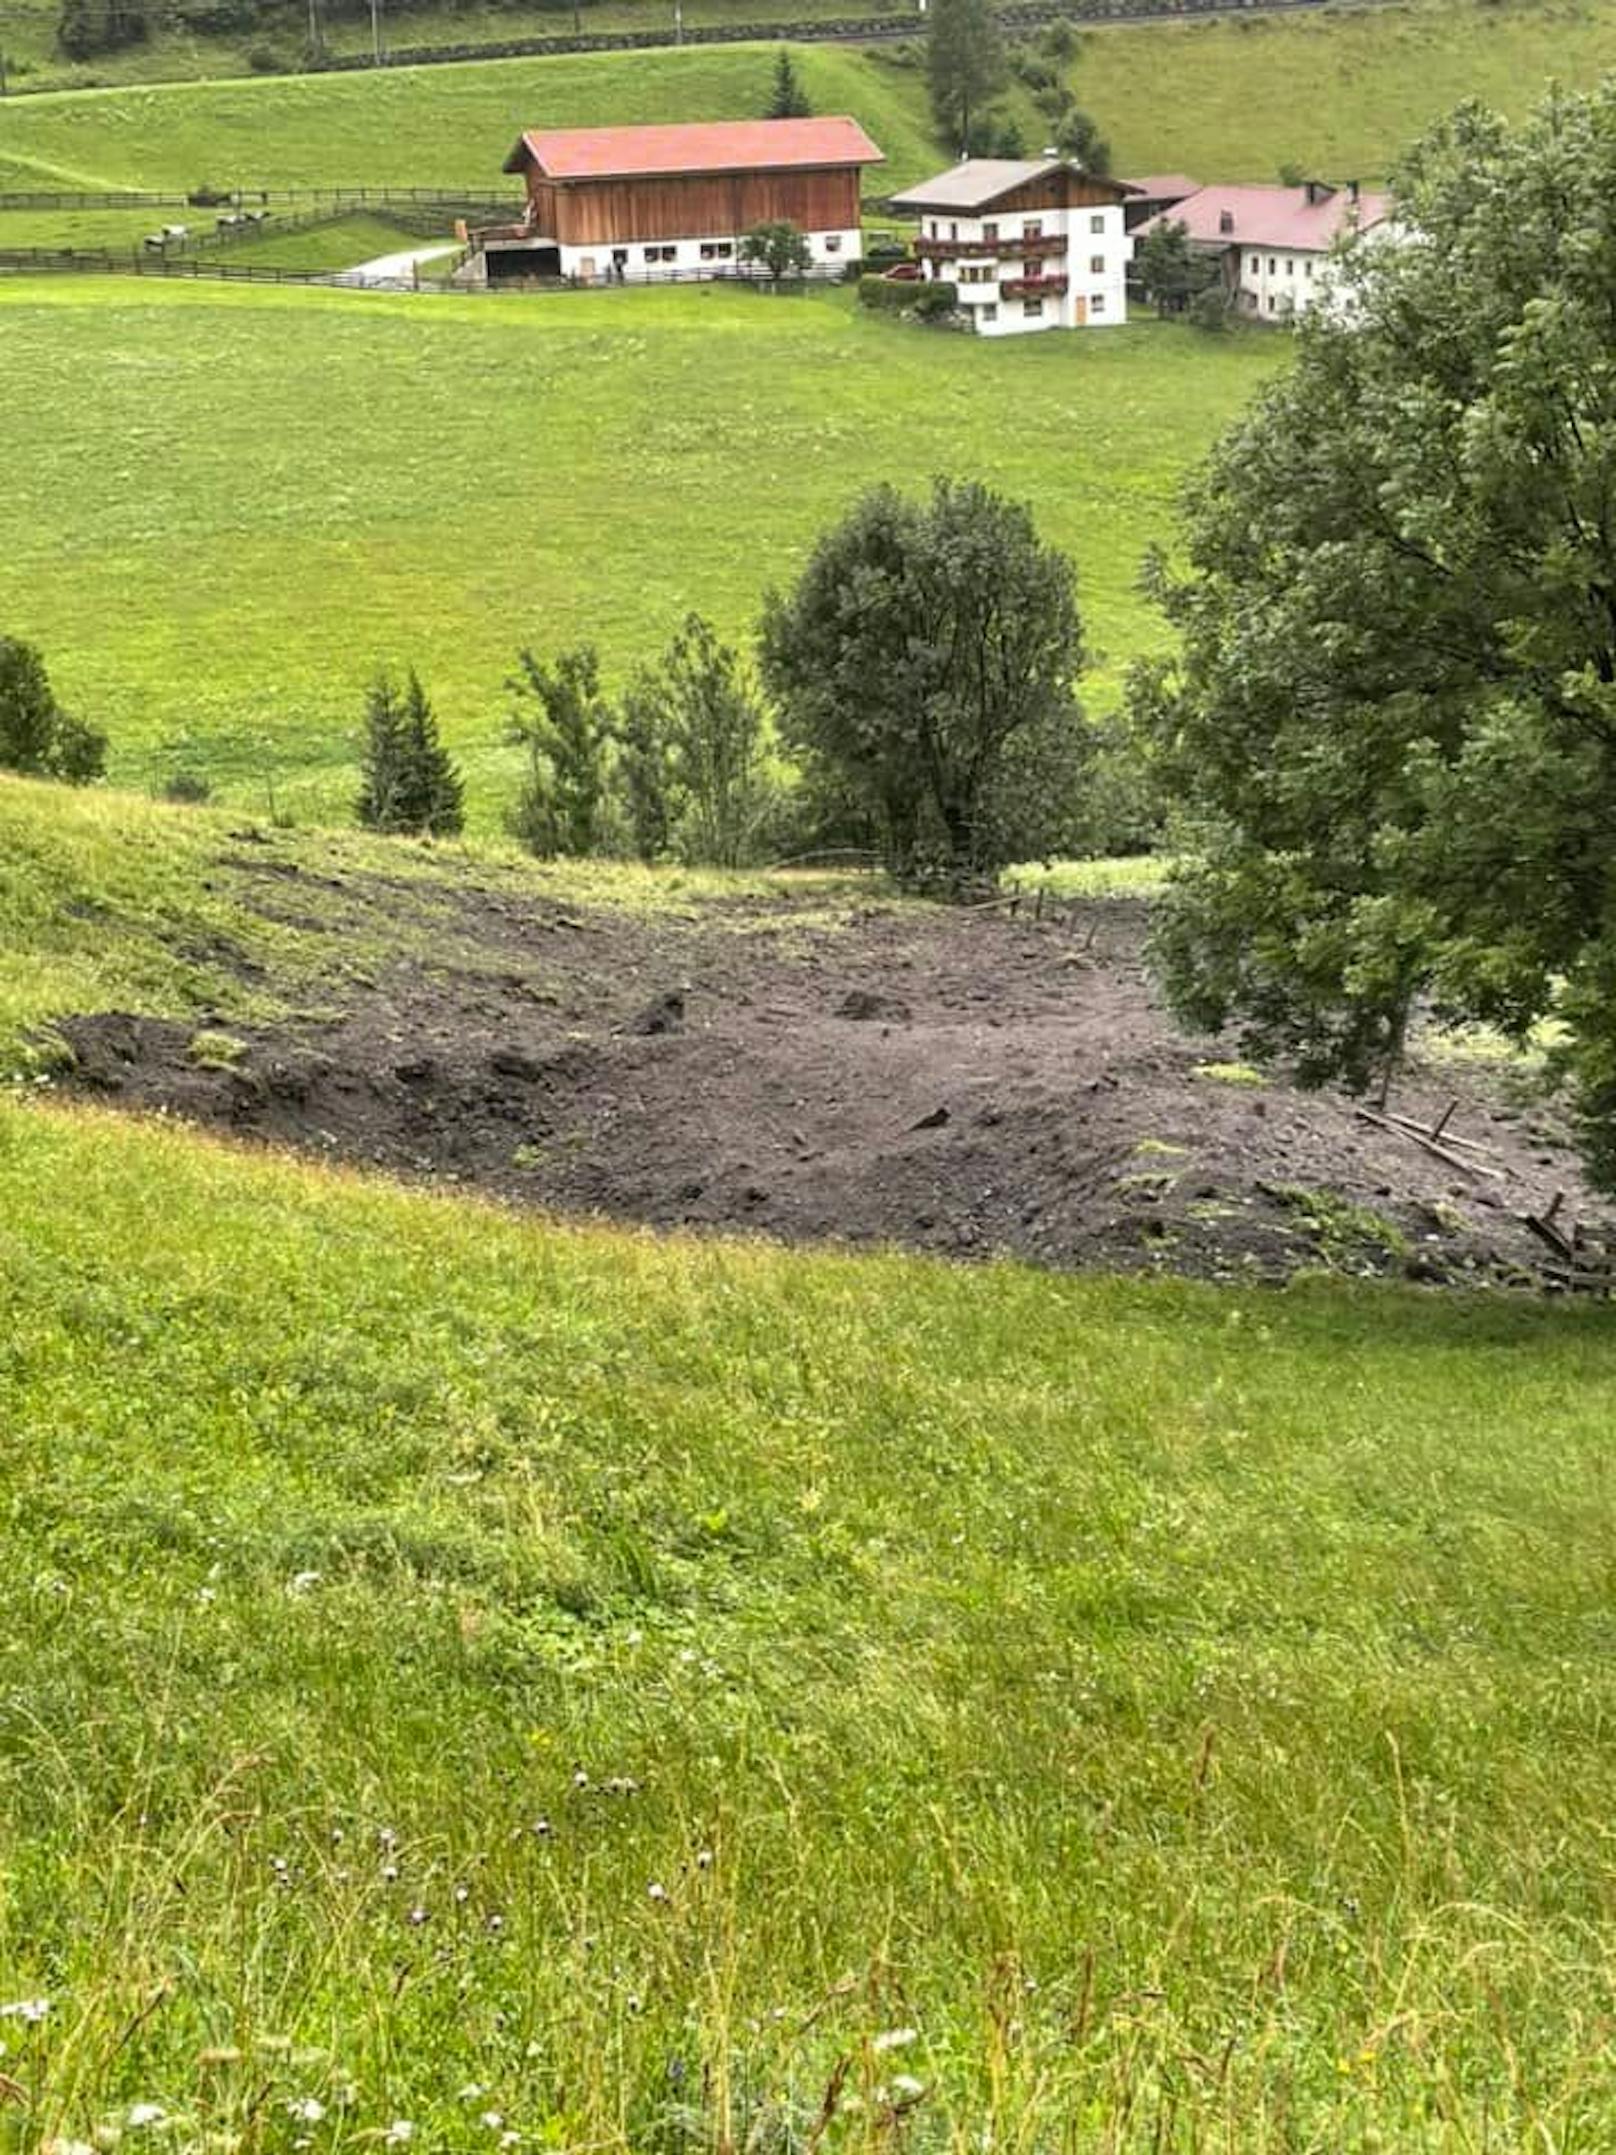 Heftige Explosion weckt Tiroler Dorf – Polizei vor Rätsel